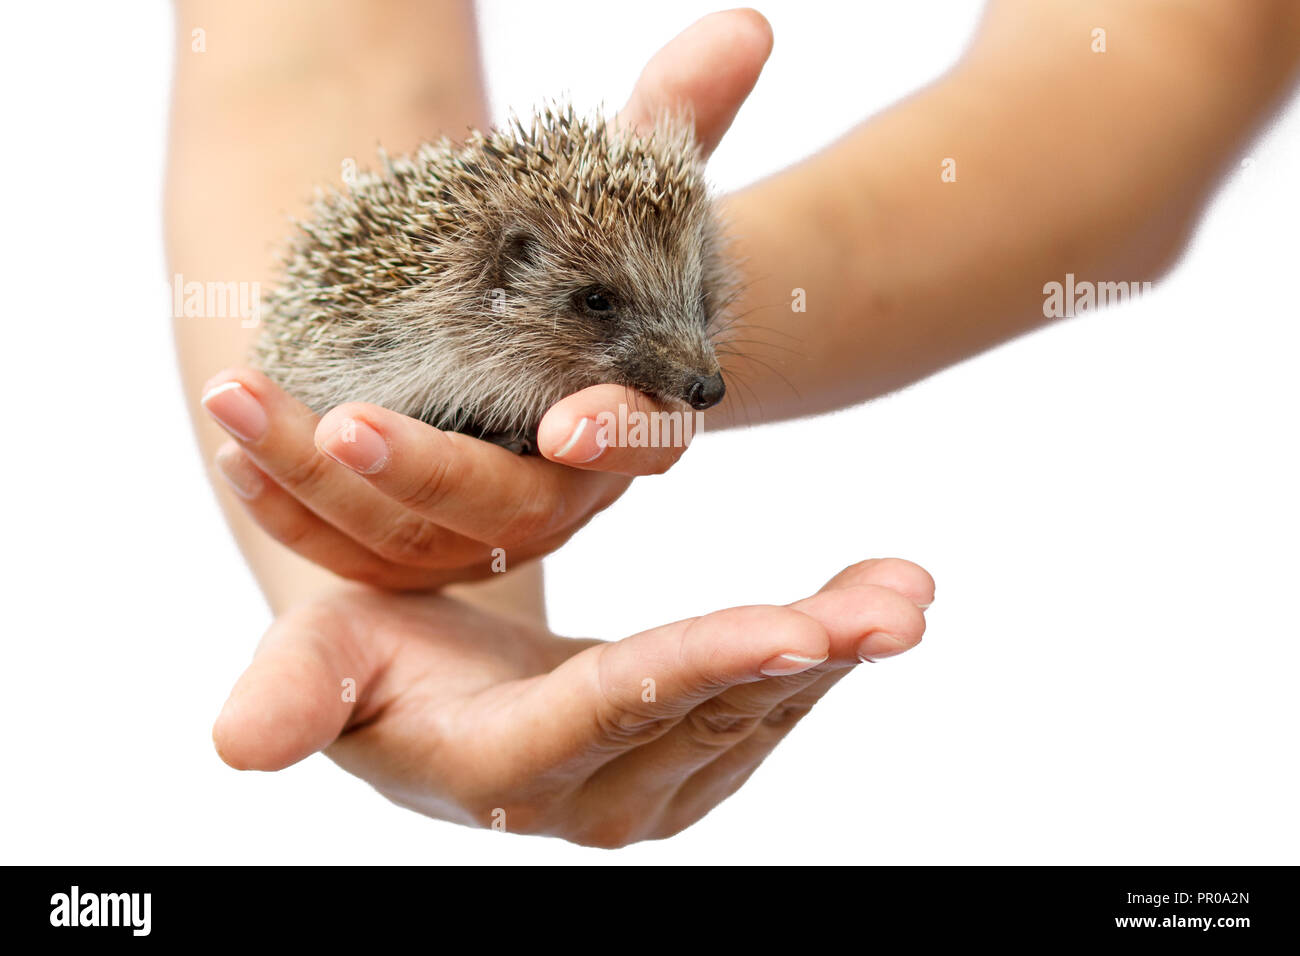 Les jeunes hedgehog dans des mains humaines. Petit animal a besoin de protection. La protection de l'environnement. Profondeur de champ. Fond isolé blanc Banque D'Images